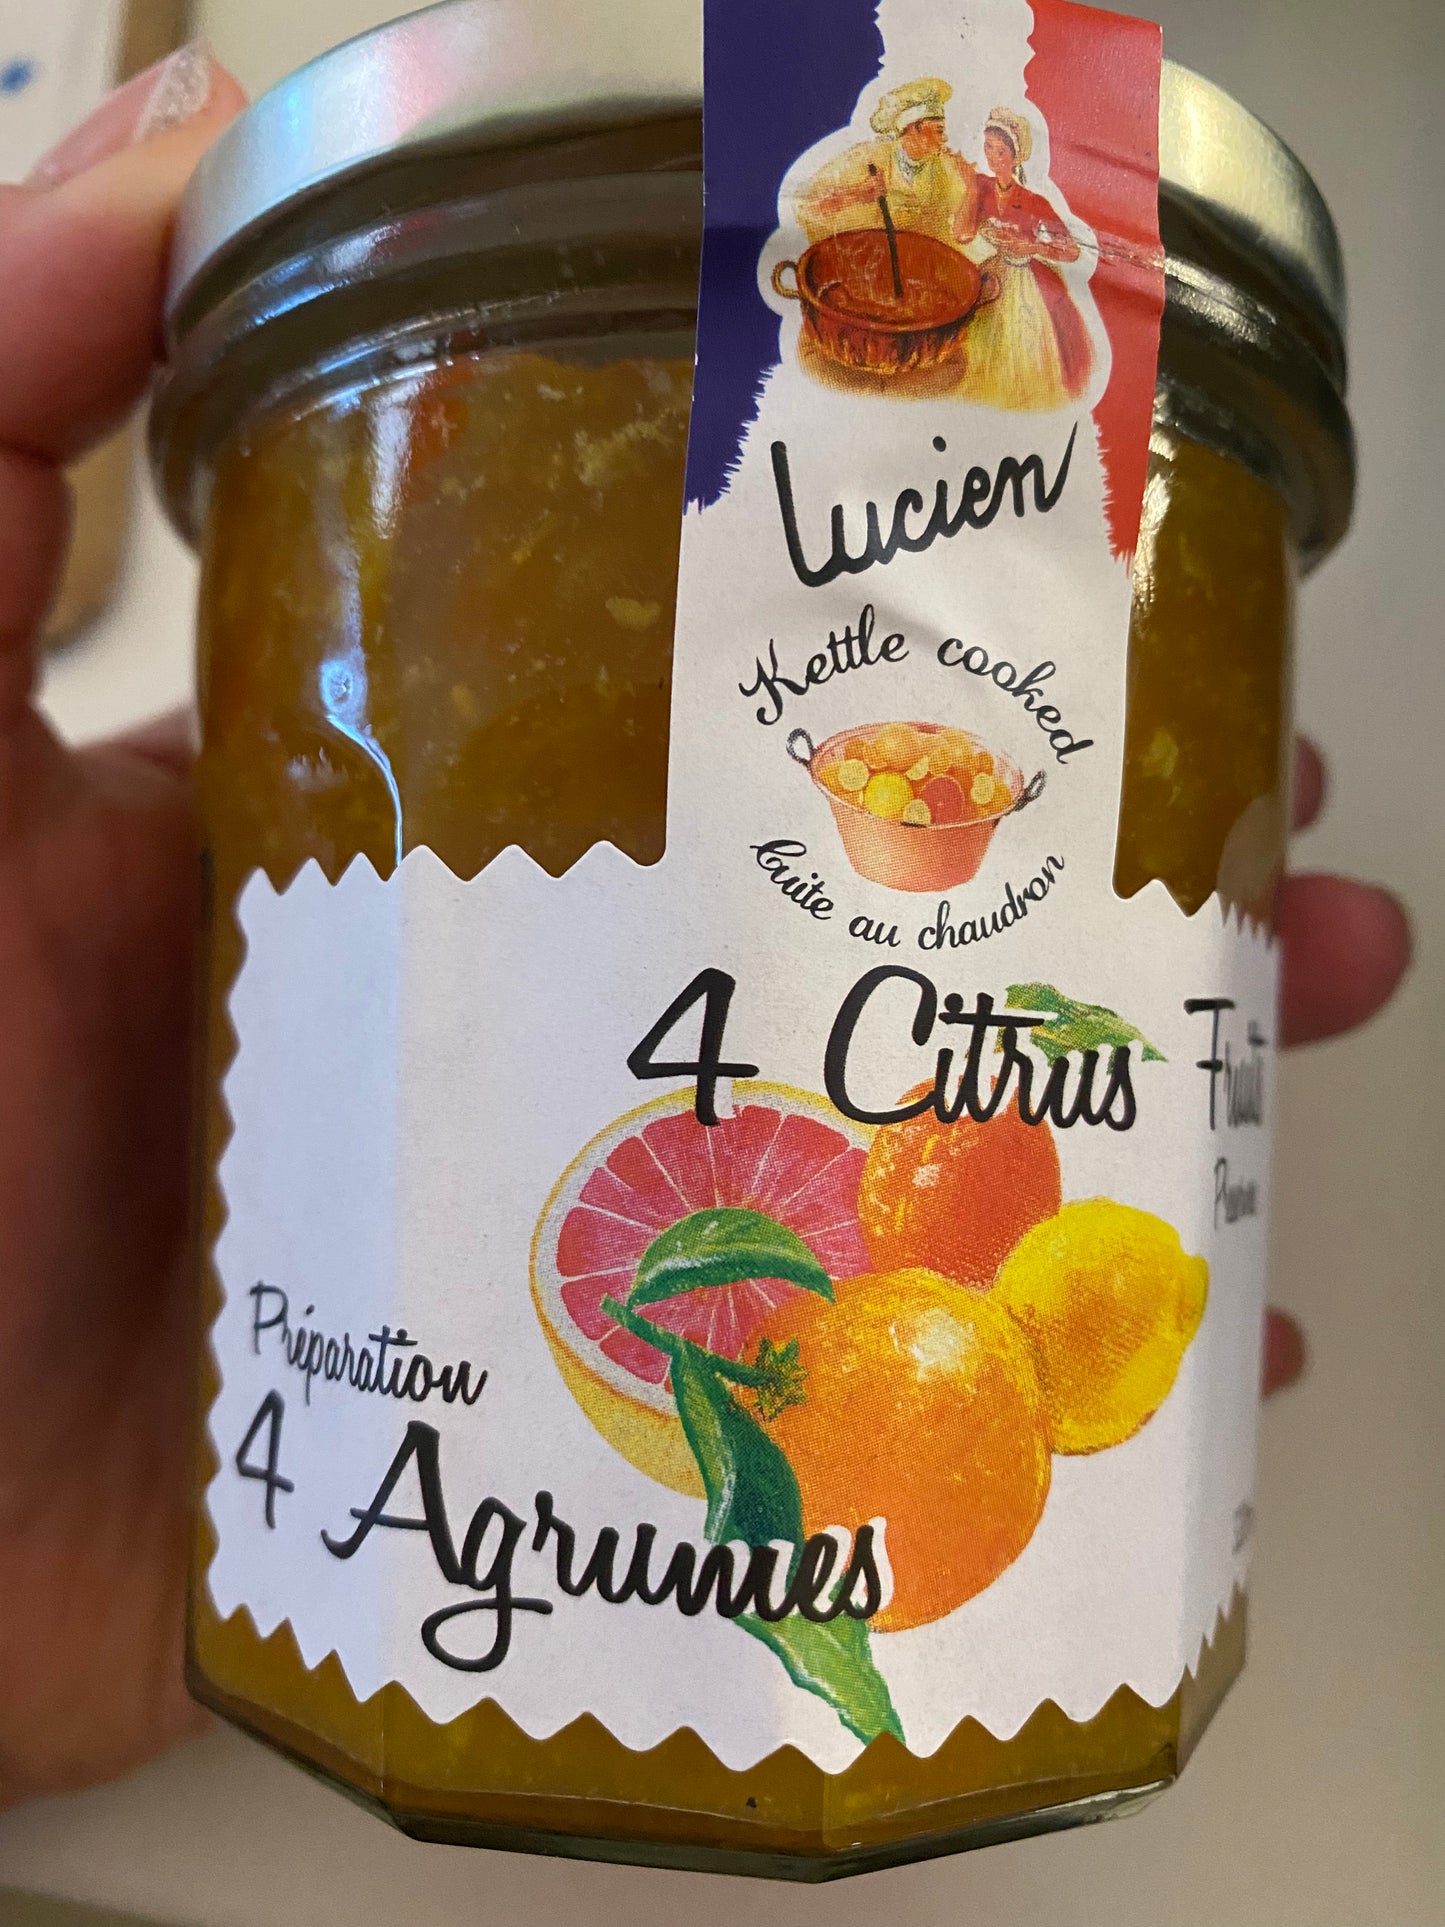 Lucien 4 citrus jam